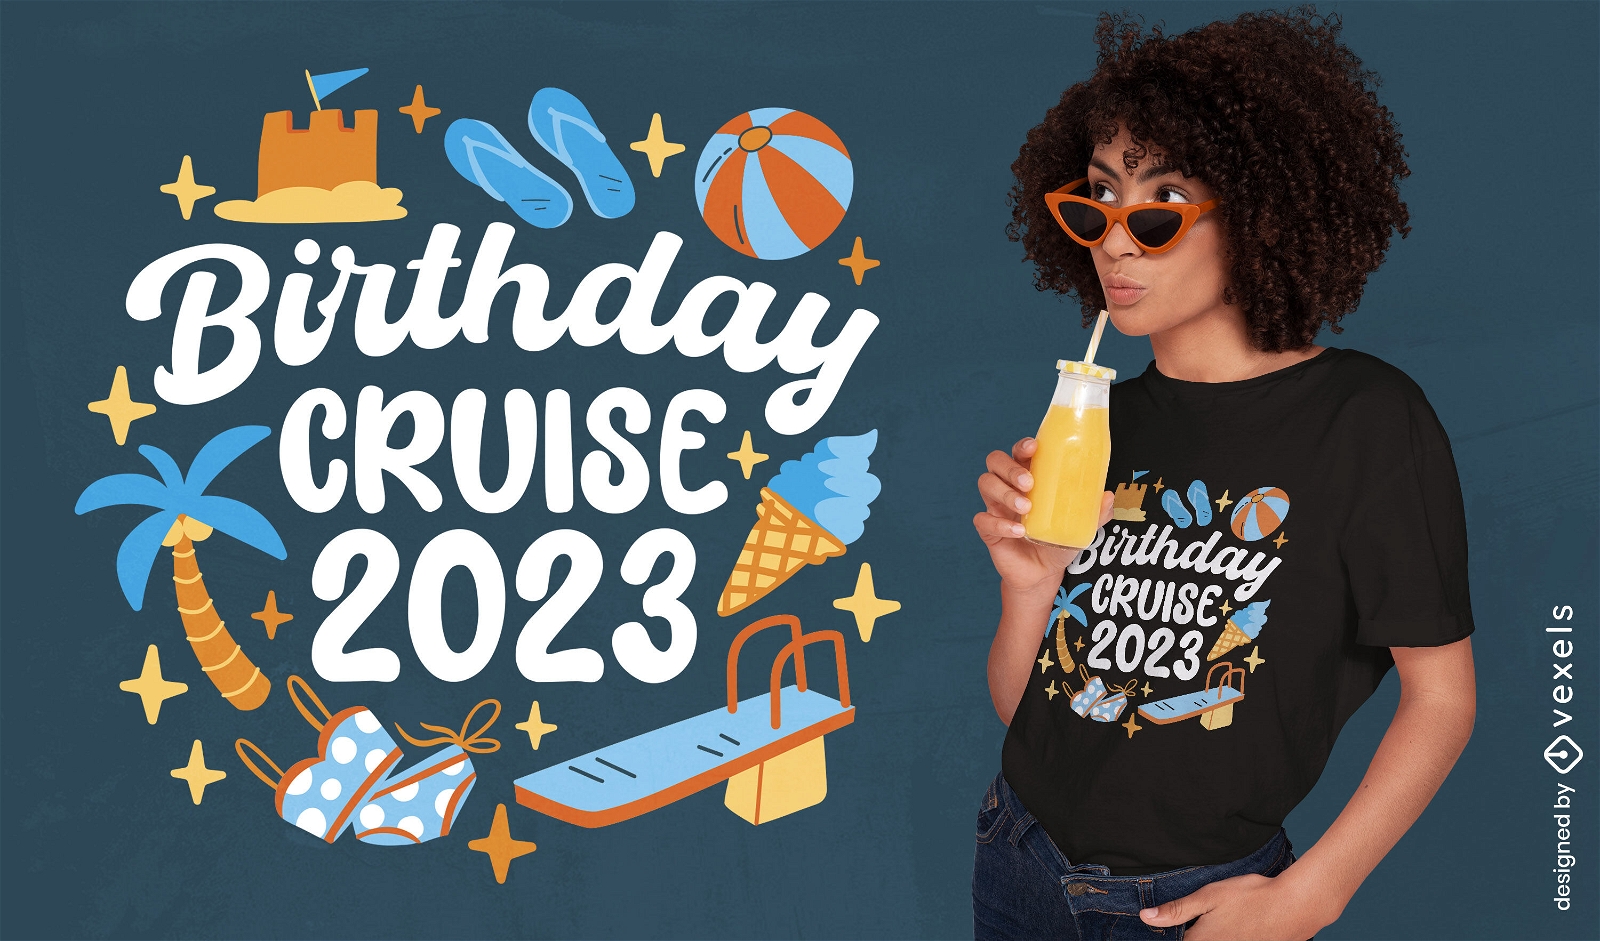 Birthday cruise t-shirt design